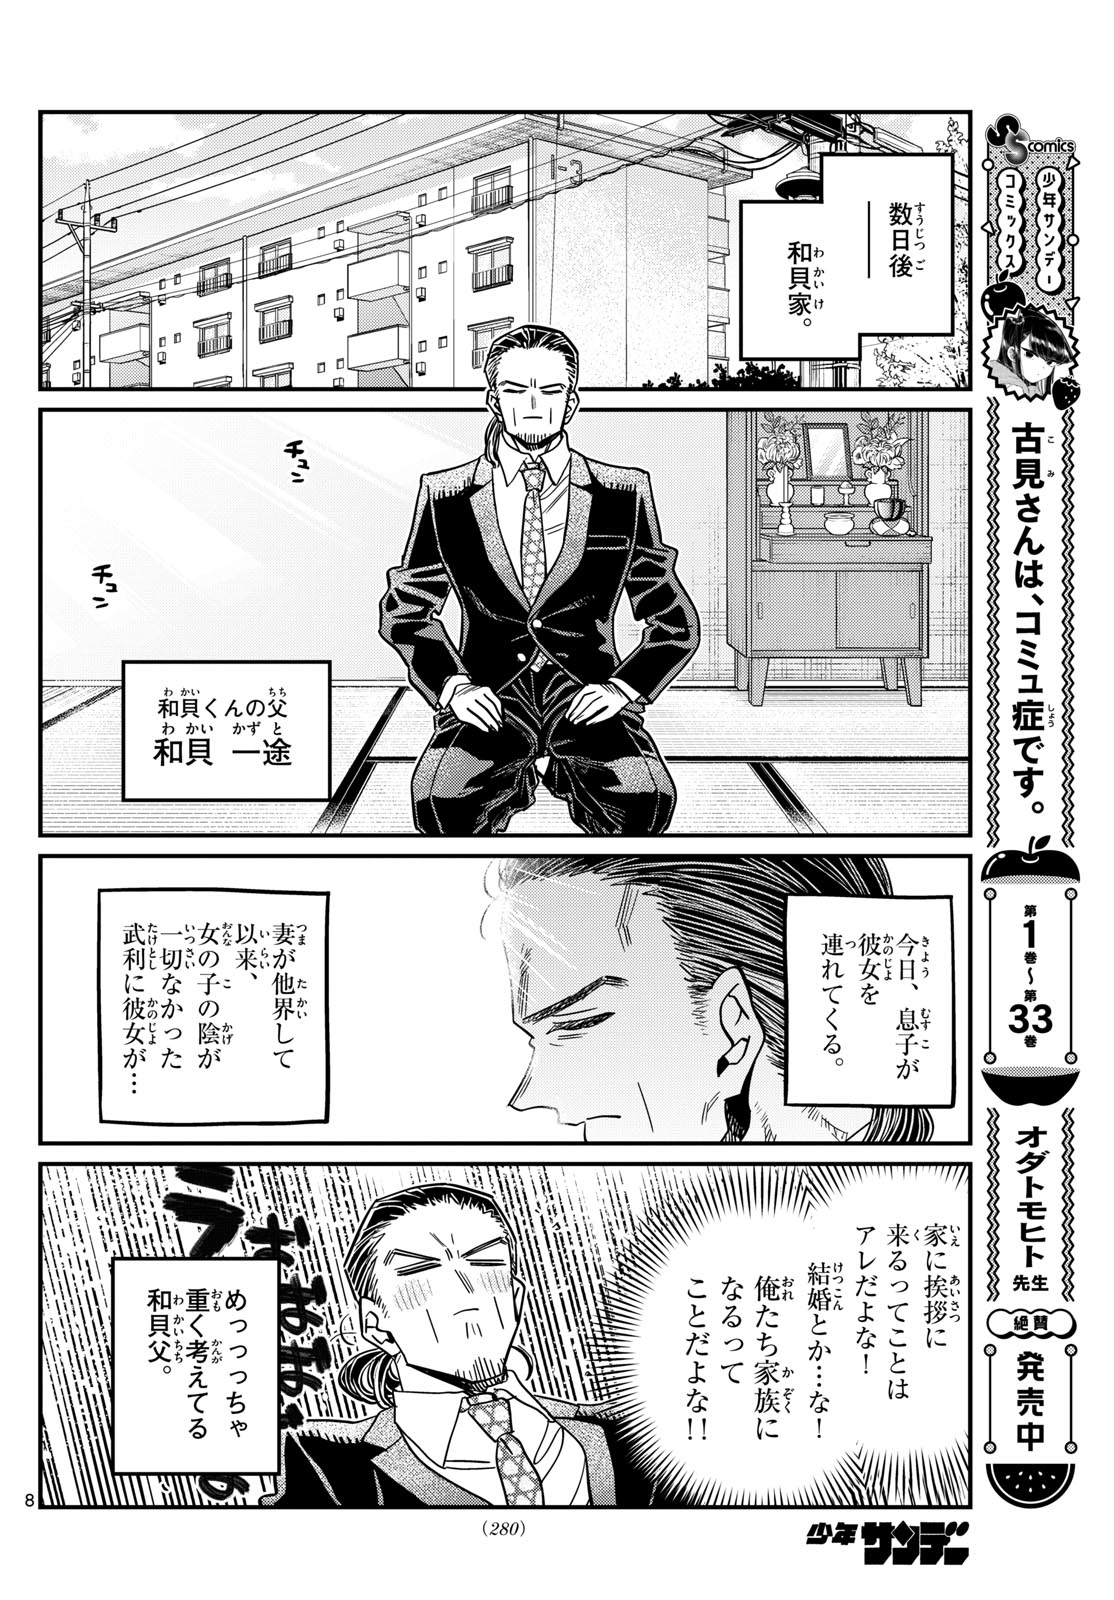 Komi-san wa Komyushou Desu - Chapter 468 - Page 2